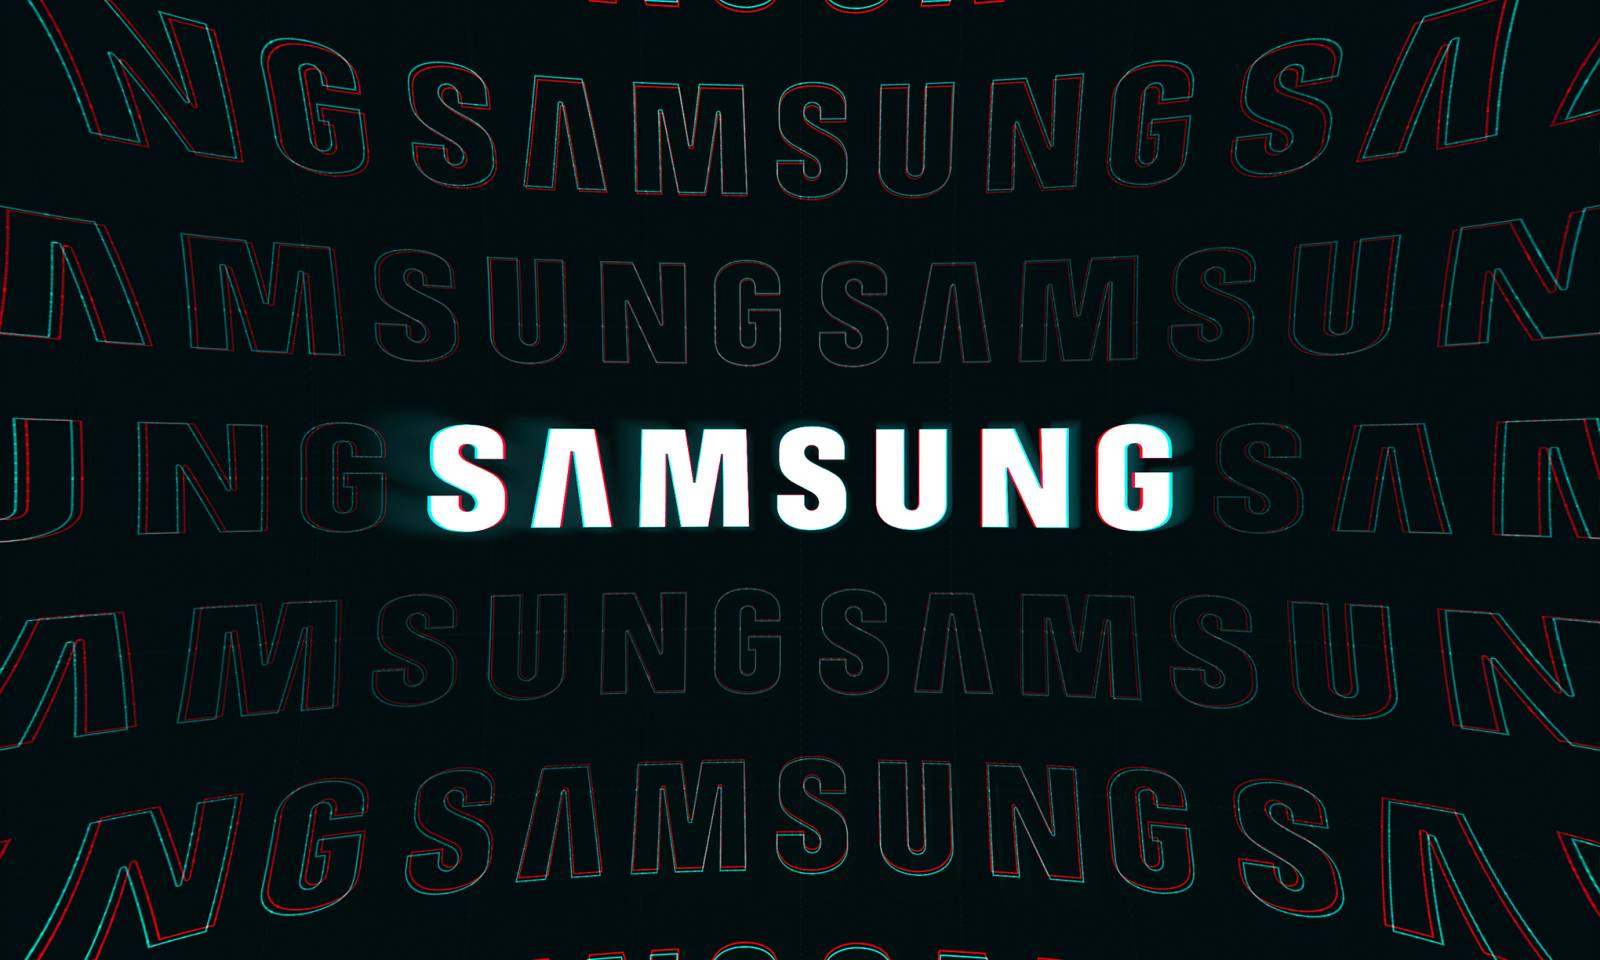 Samsung actualizari 4 ani